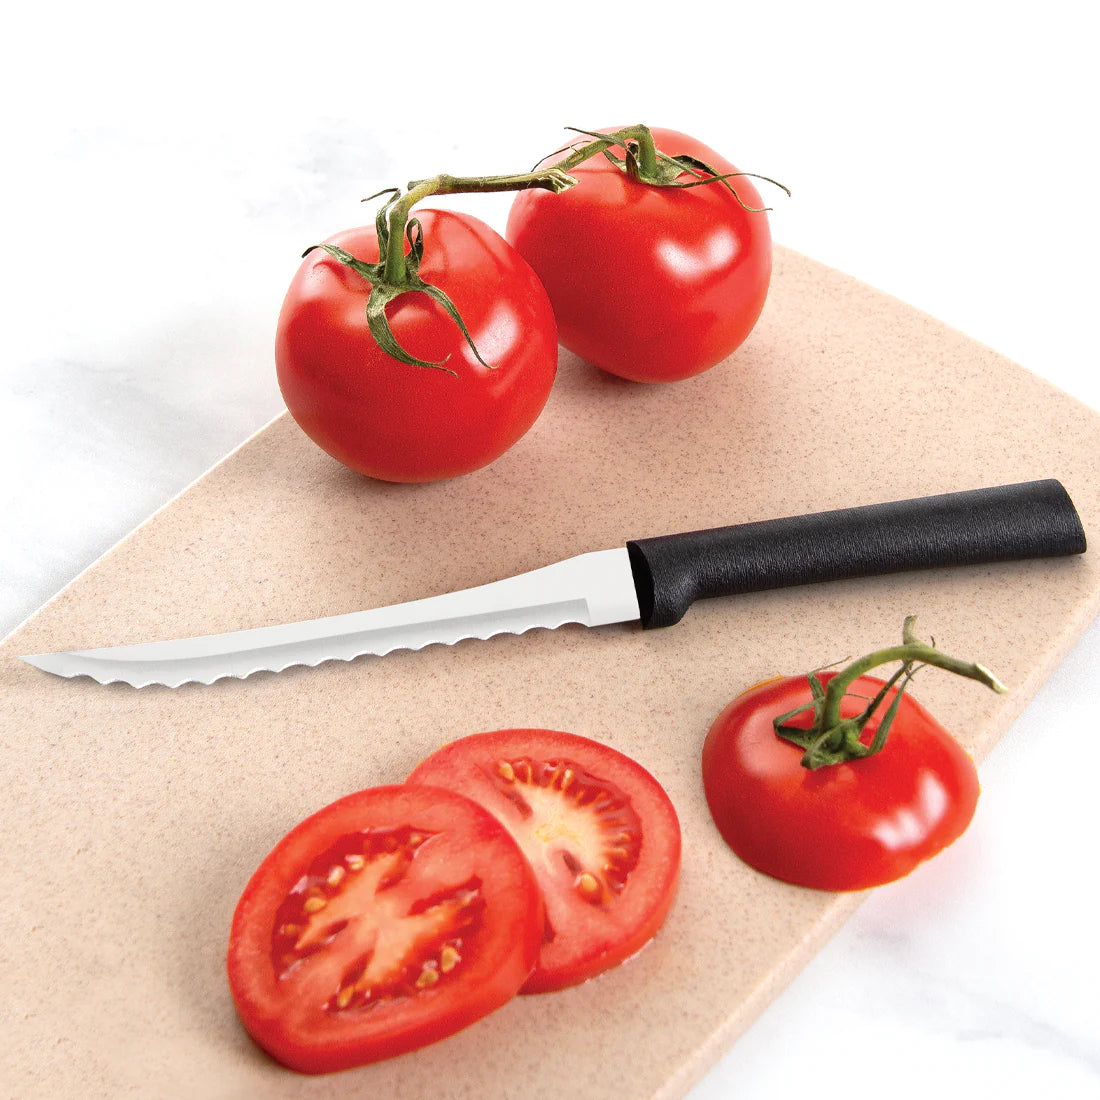 Produce Knives